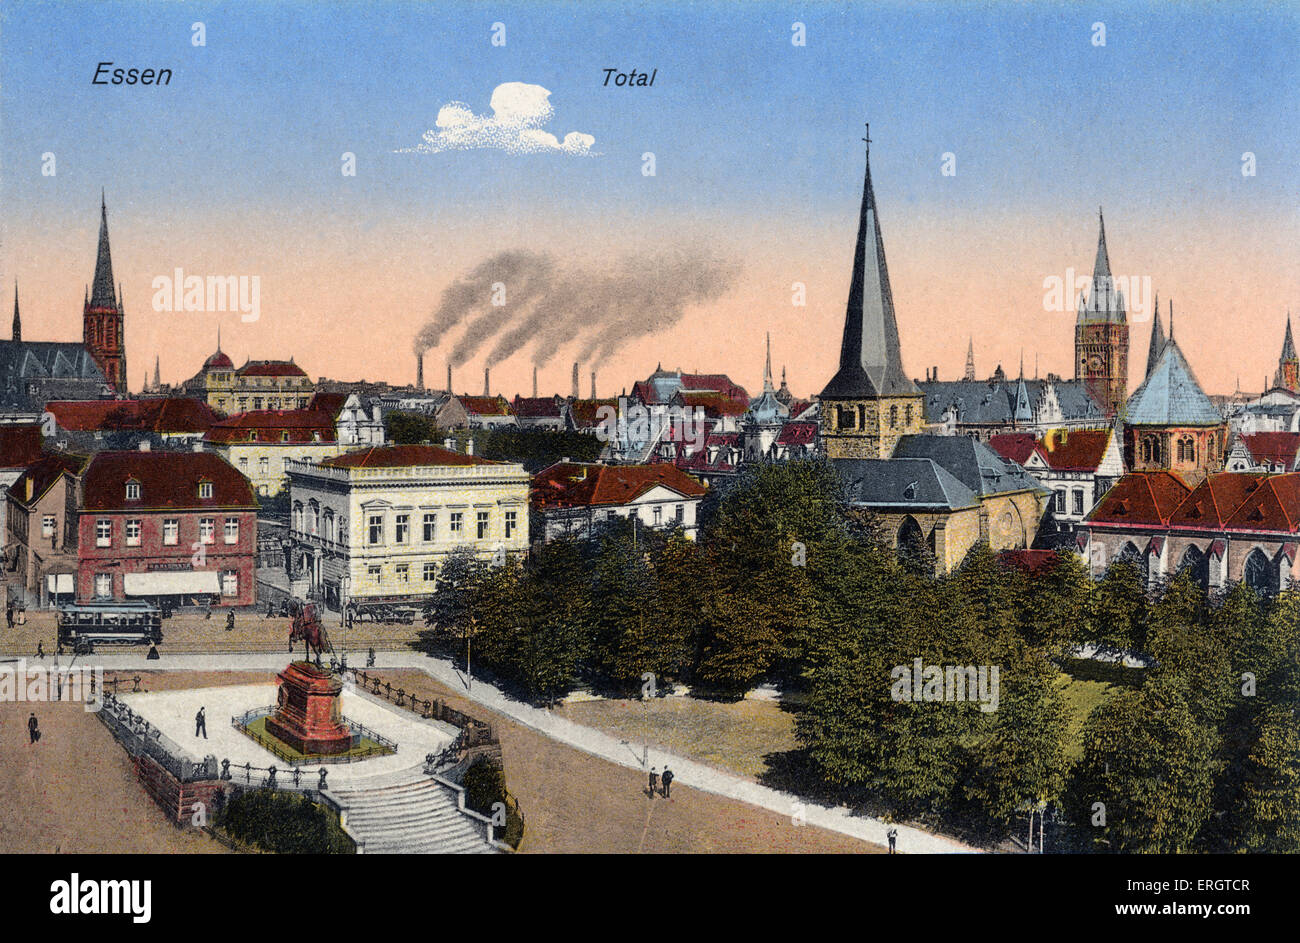 Essen, Deutschland - Blick auf das Stadtzentrum. Anfang des 20. Jahrhunderts Postkarte. Kirche Sprires. Industrie. Stockfoto